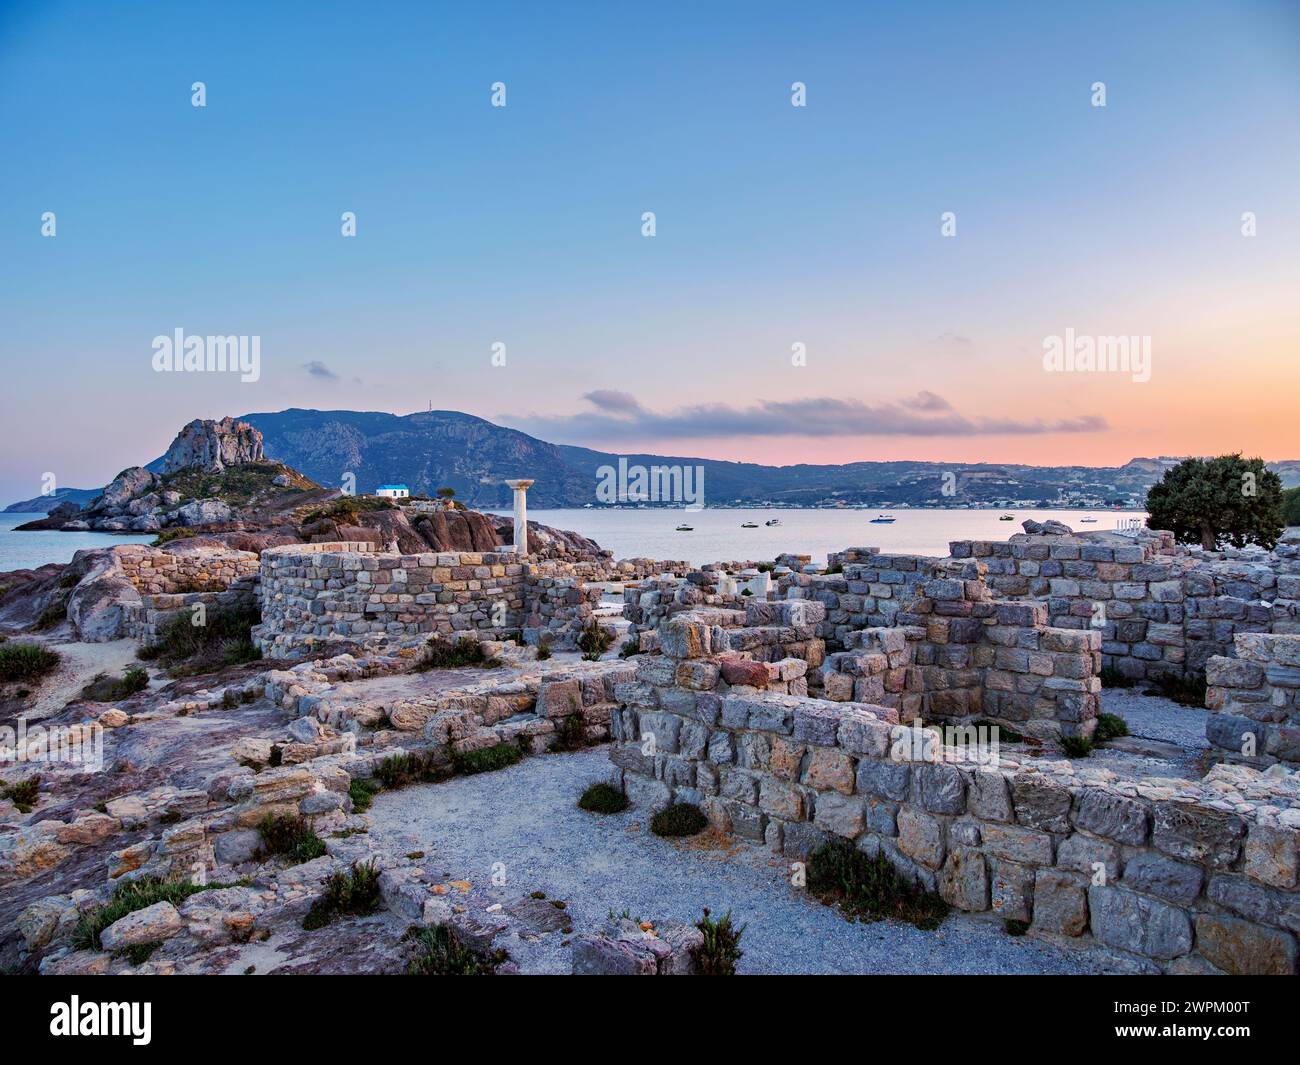 St. Ruinen der Basilika von Stefanos in der Abenddämmerung, Strand von Agios Stefanos, Insel Kos, Dodekanese, griechische Inseln, Griechenland, Europa Stockfoto